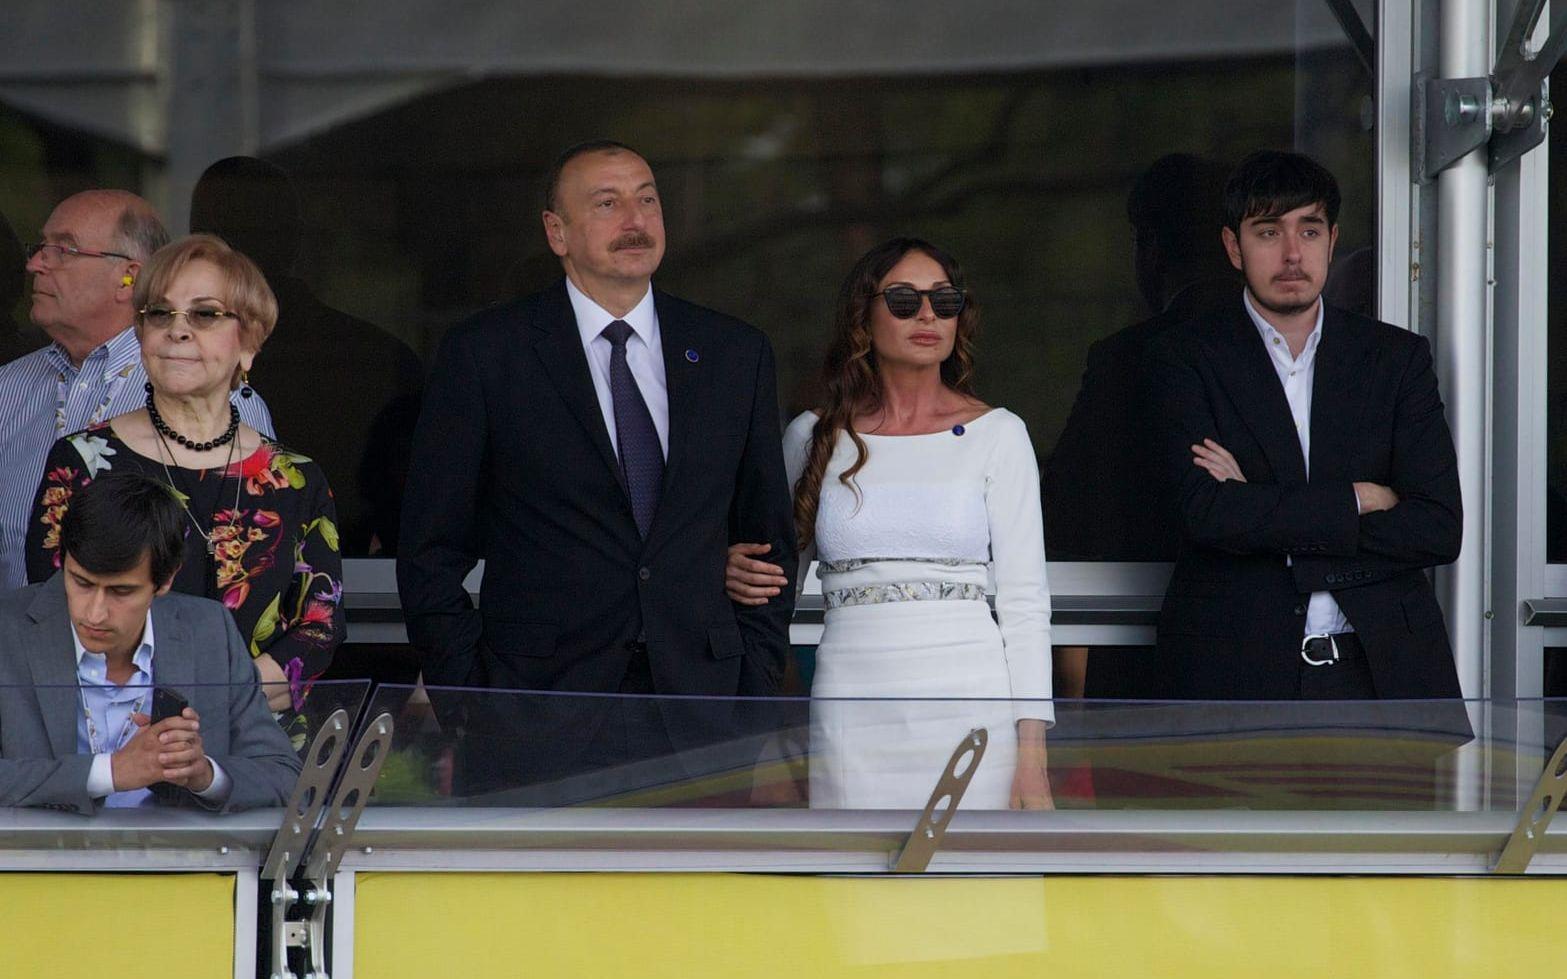 Ilham Aliyev sägs styra landet som en diktatur och skendemokrati samt förfölja och fängsla regimkritiker. Här med hustrun Mehriban Aliyeva under Azerbajdzjan Formel 1-tävling. Bild: TT